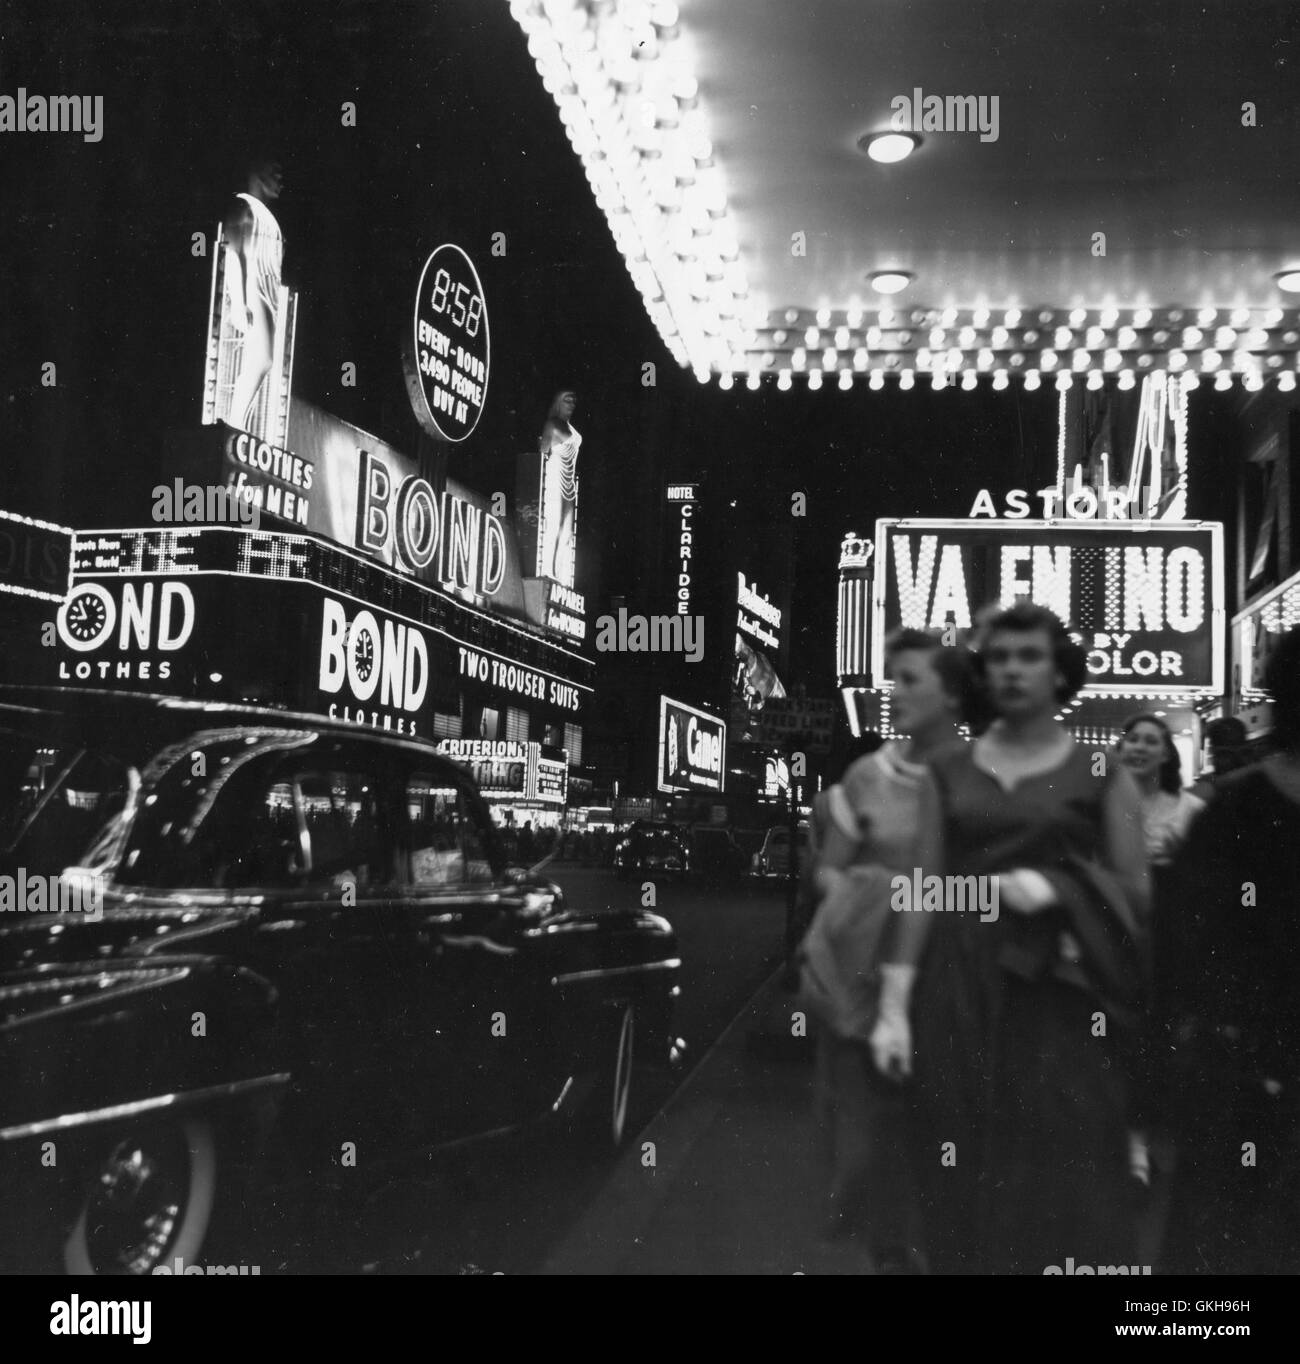 Vue de la nuit de Broadway de New York, éclairé avec affichage publicitaire électrique. Banque D'Images